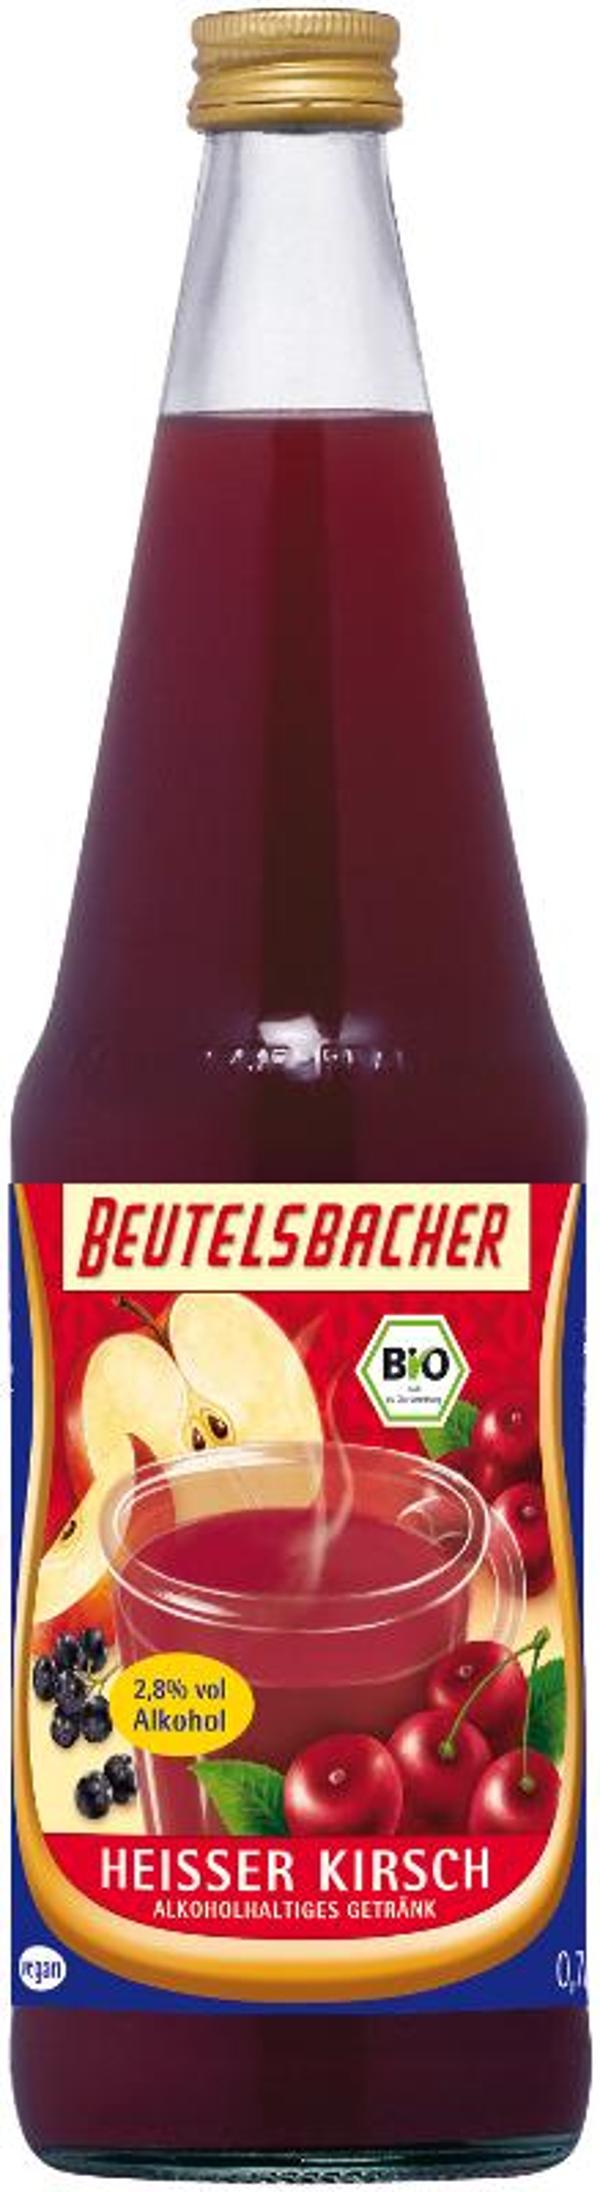 Produktfoto zu Heisser Kirsch (2,8% vol.)